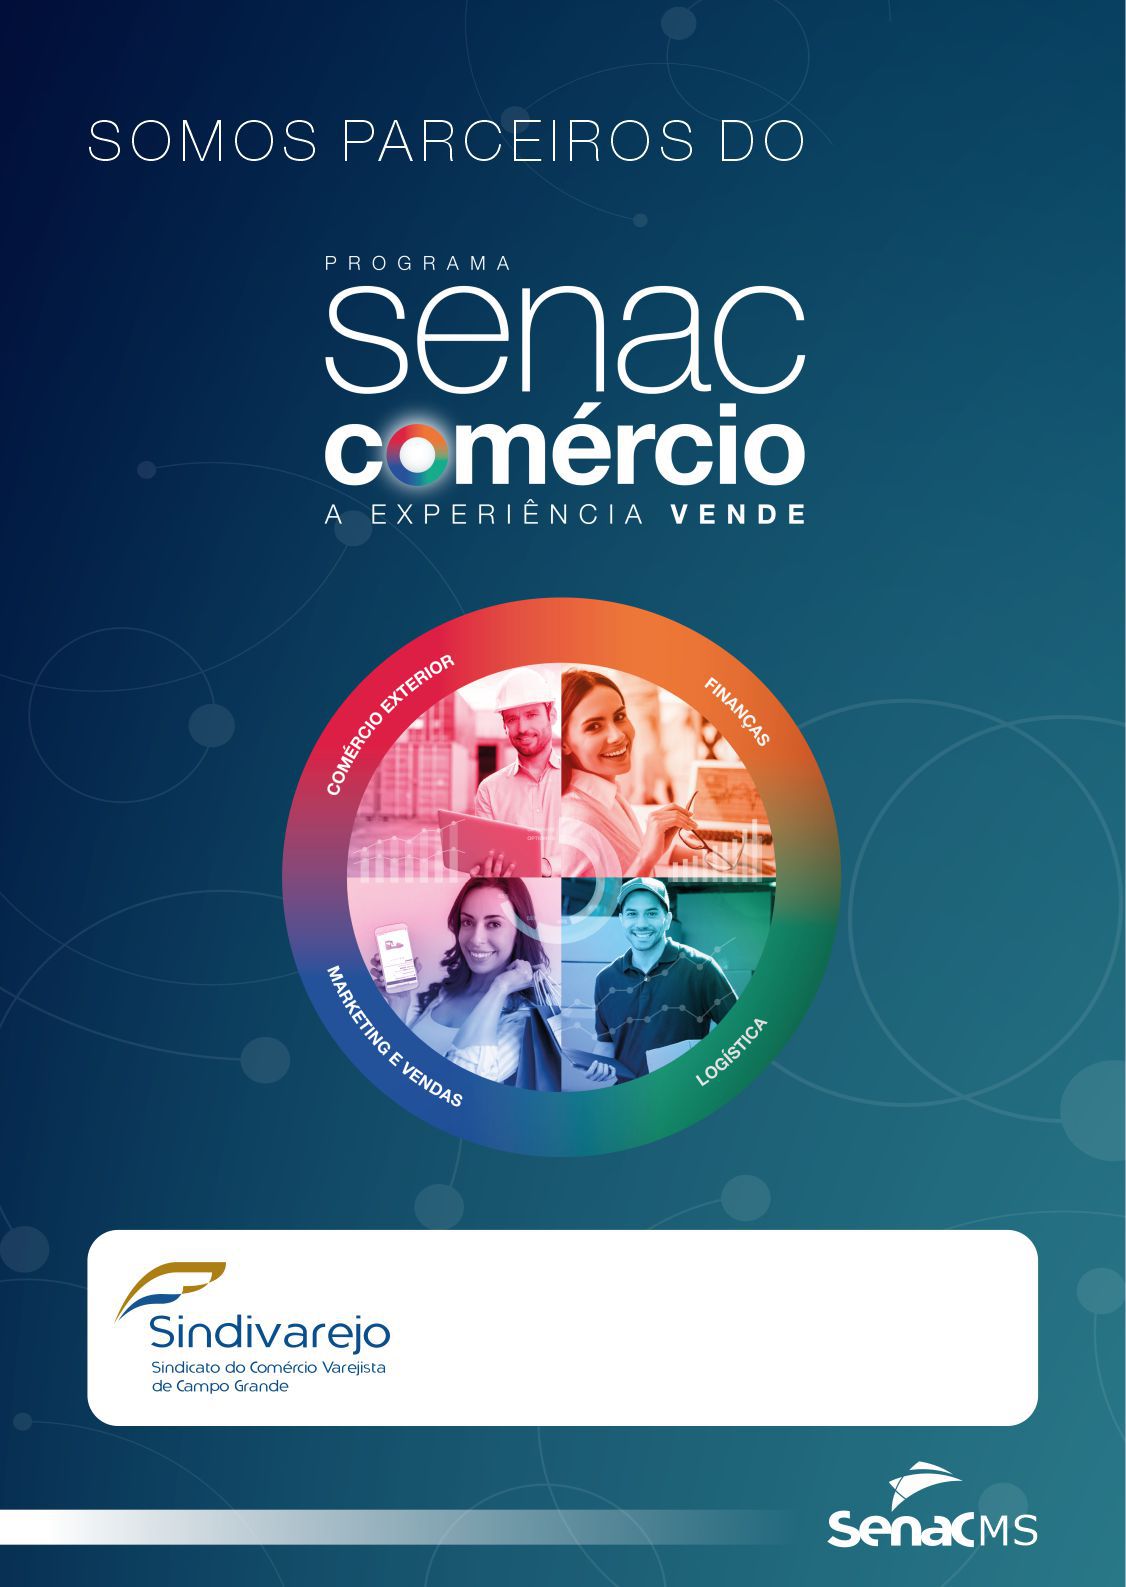 Senac e Sindivarejo CG oferecem descontos em cursos de qualificação na área do comércio